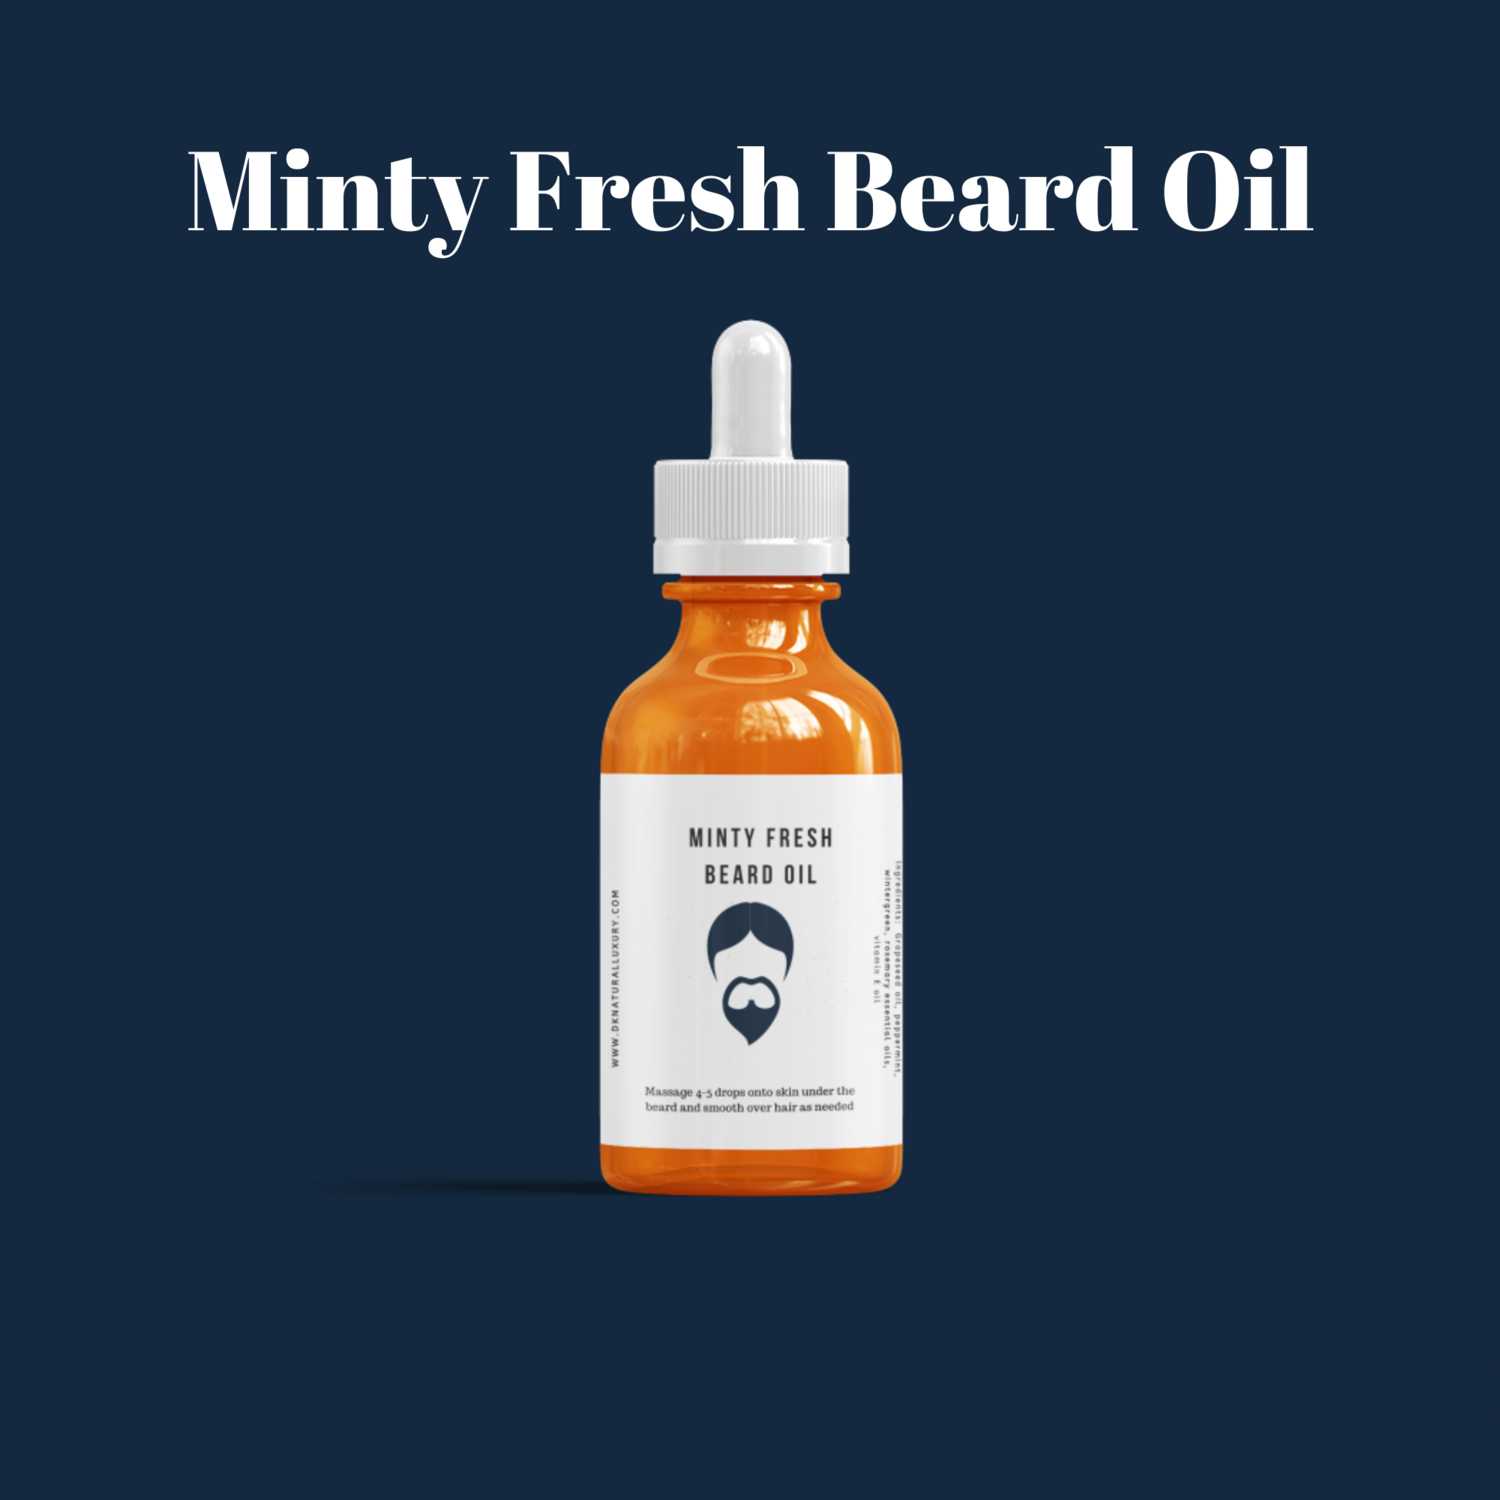 Minty Fresh Beard Oil